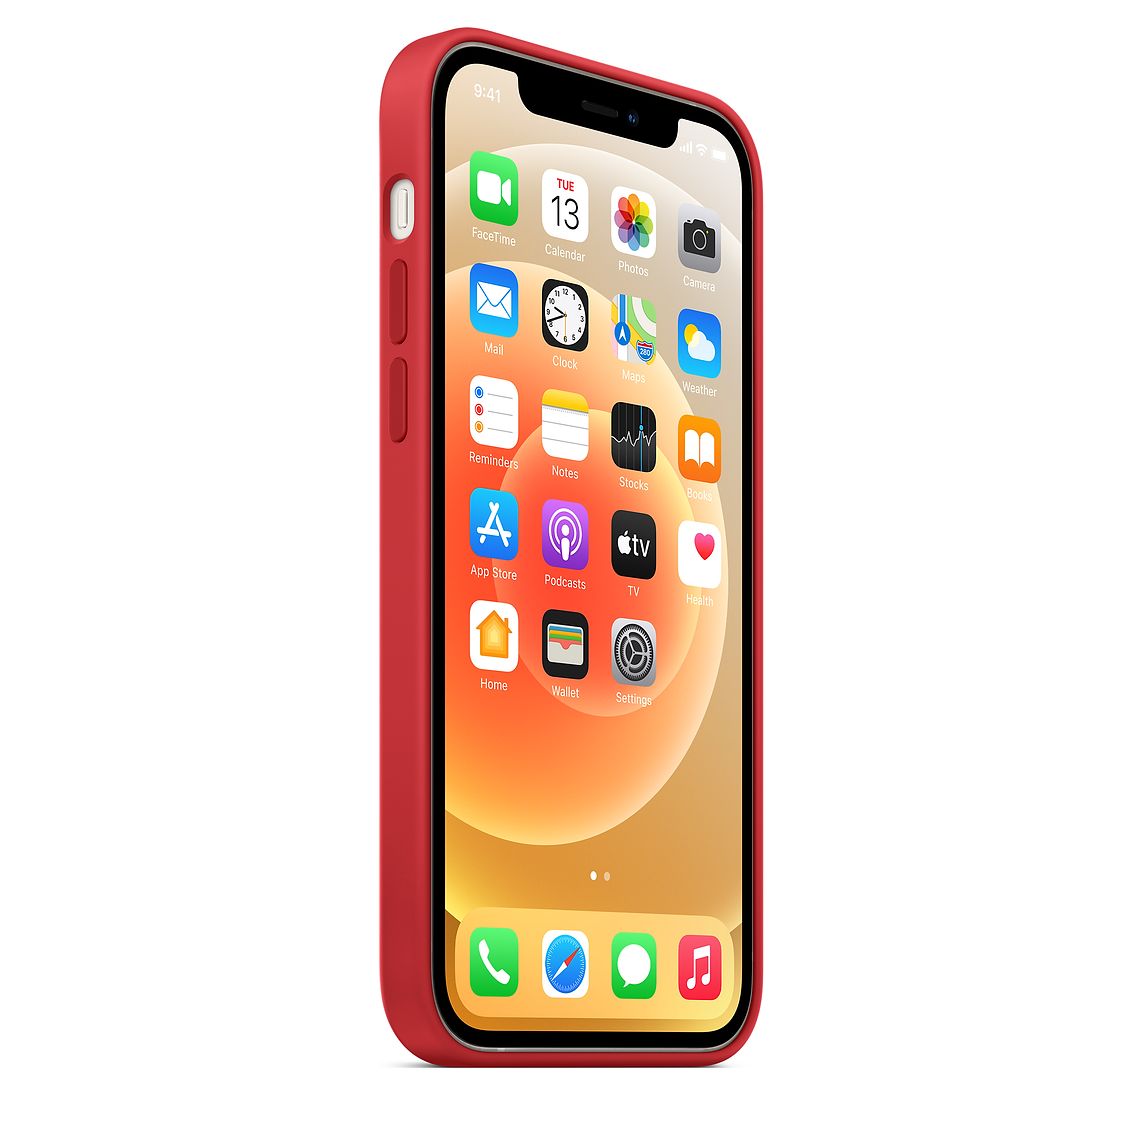 Фото — Чехол для смартфона Apple MagSafe для iPhone 12/12 Pro, cиликон, красный (PRODUCT)RED